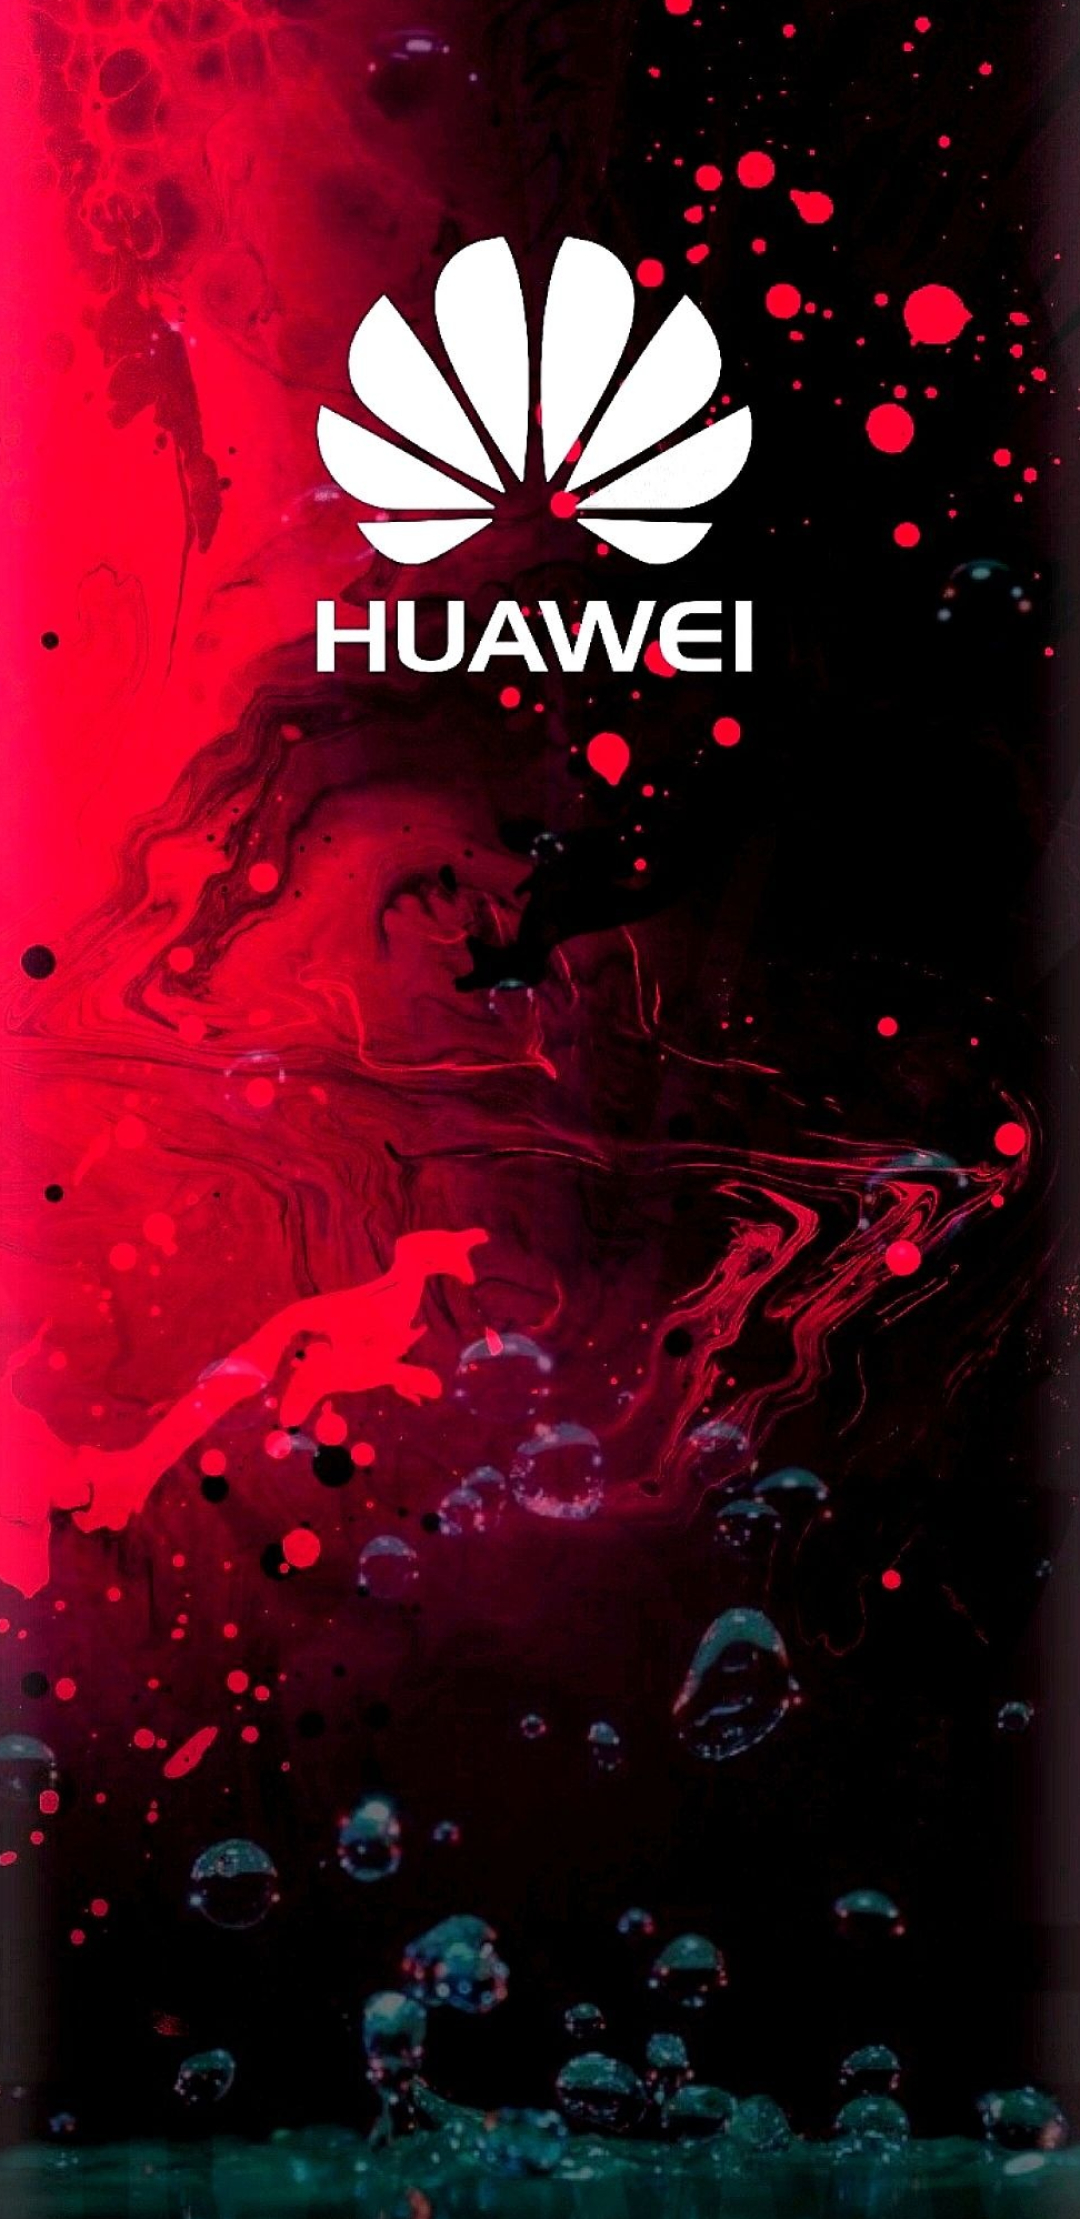 Huawei wallpaper 2022, Stylish design, Huawei brand, Wallpaper, 1080x2220 HD Phone